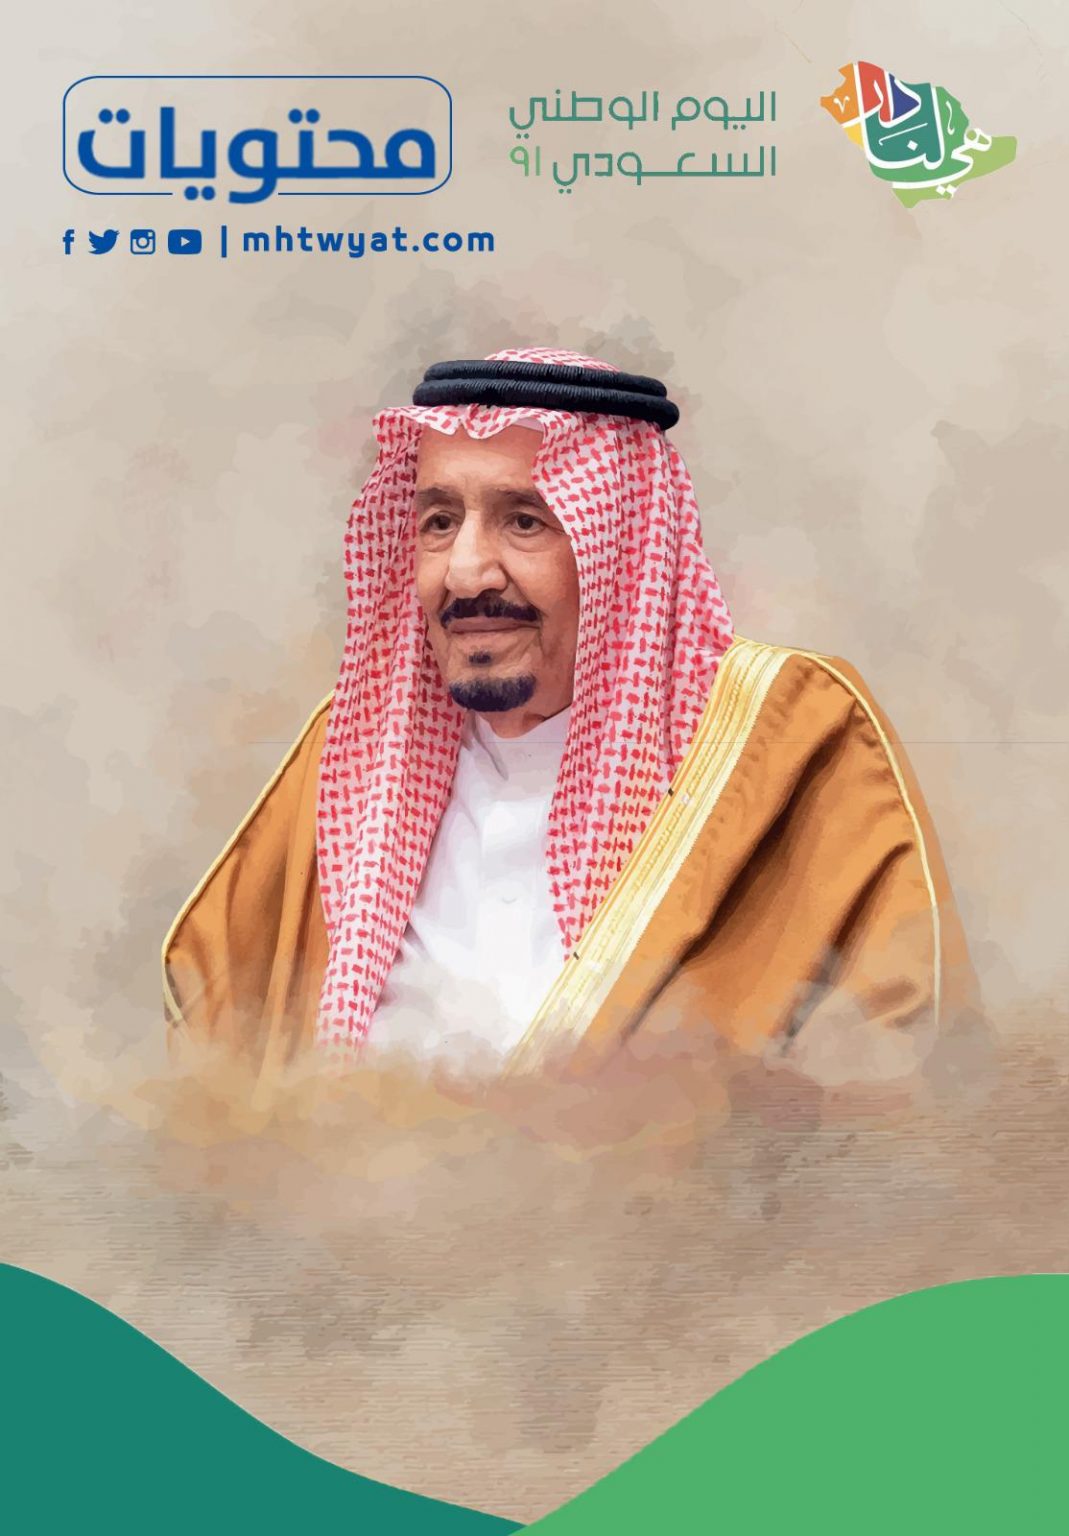 رسالة تهنئة للملك بمناسبة اليوم الوطني السعودي 91 مكتوبة وجديدة موقع محتويات